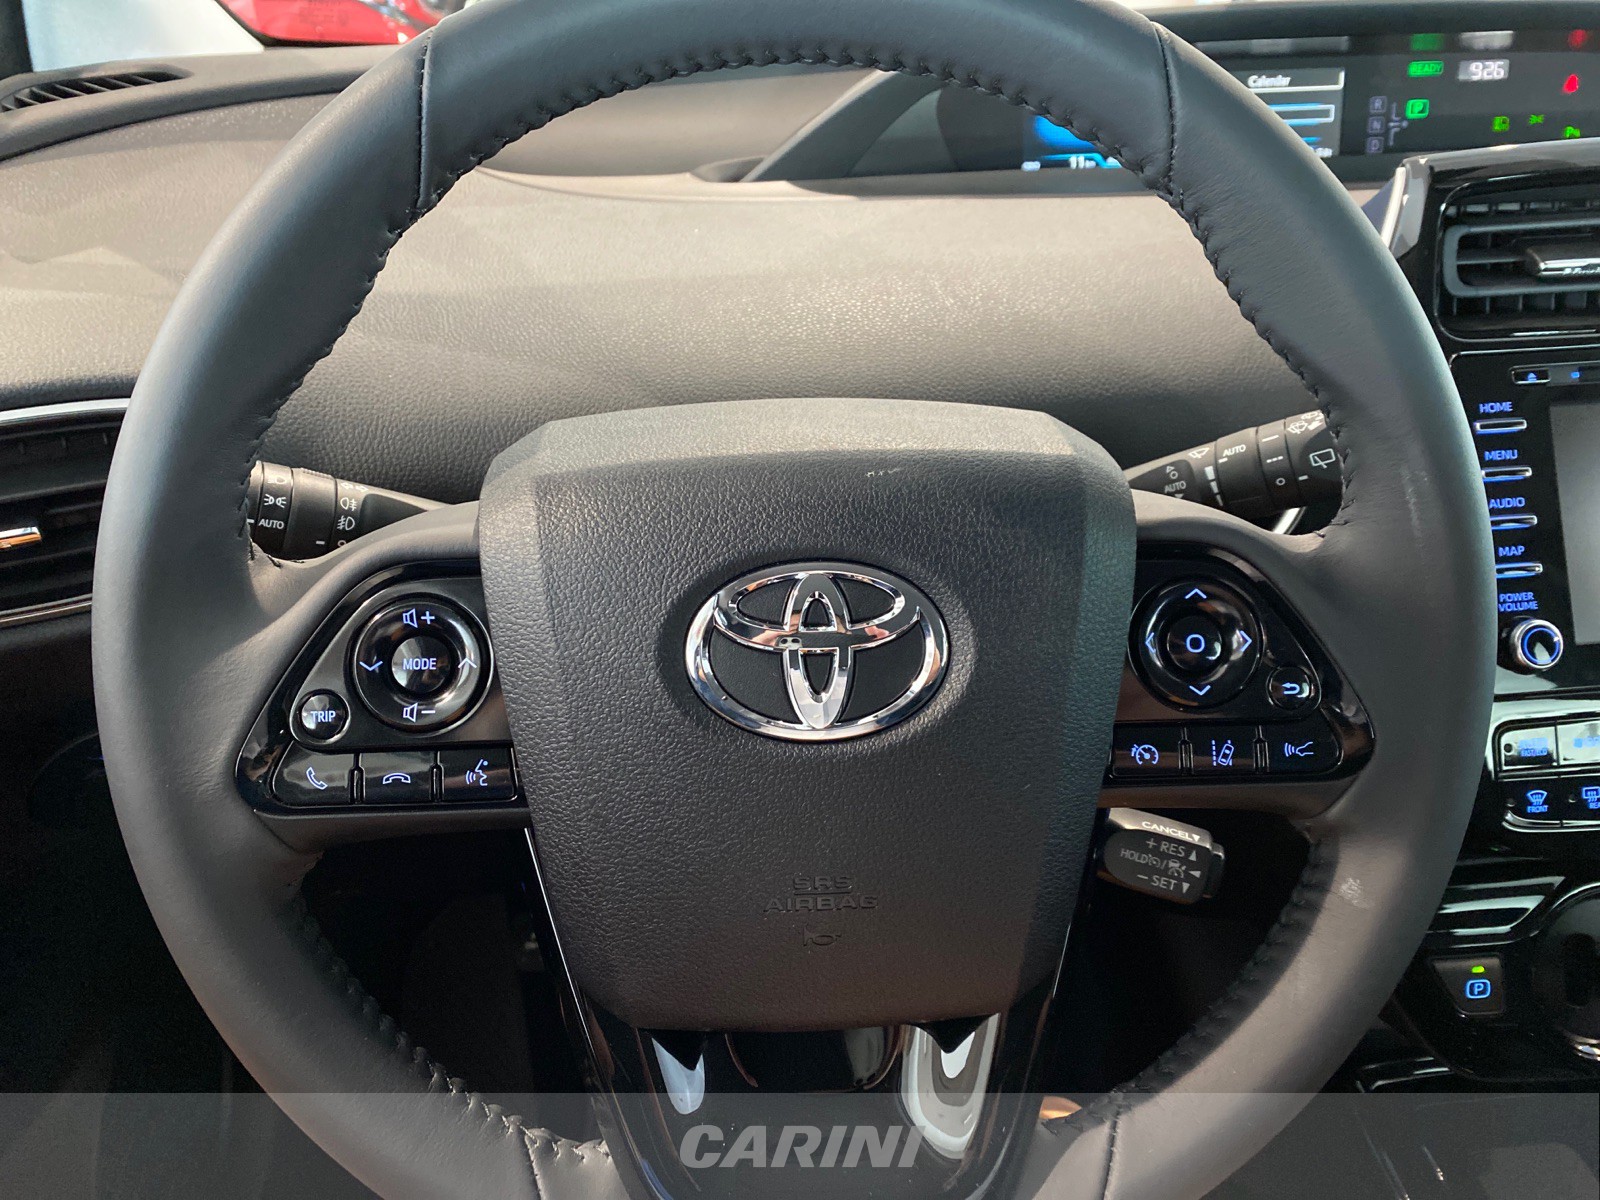 CARINI Toyota Prius